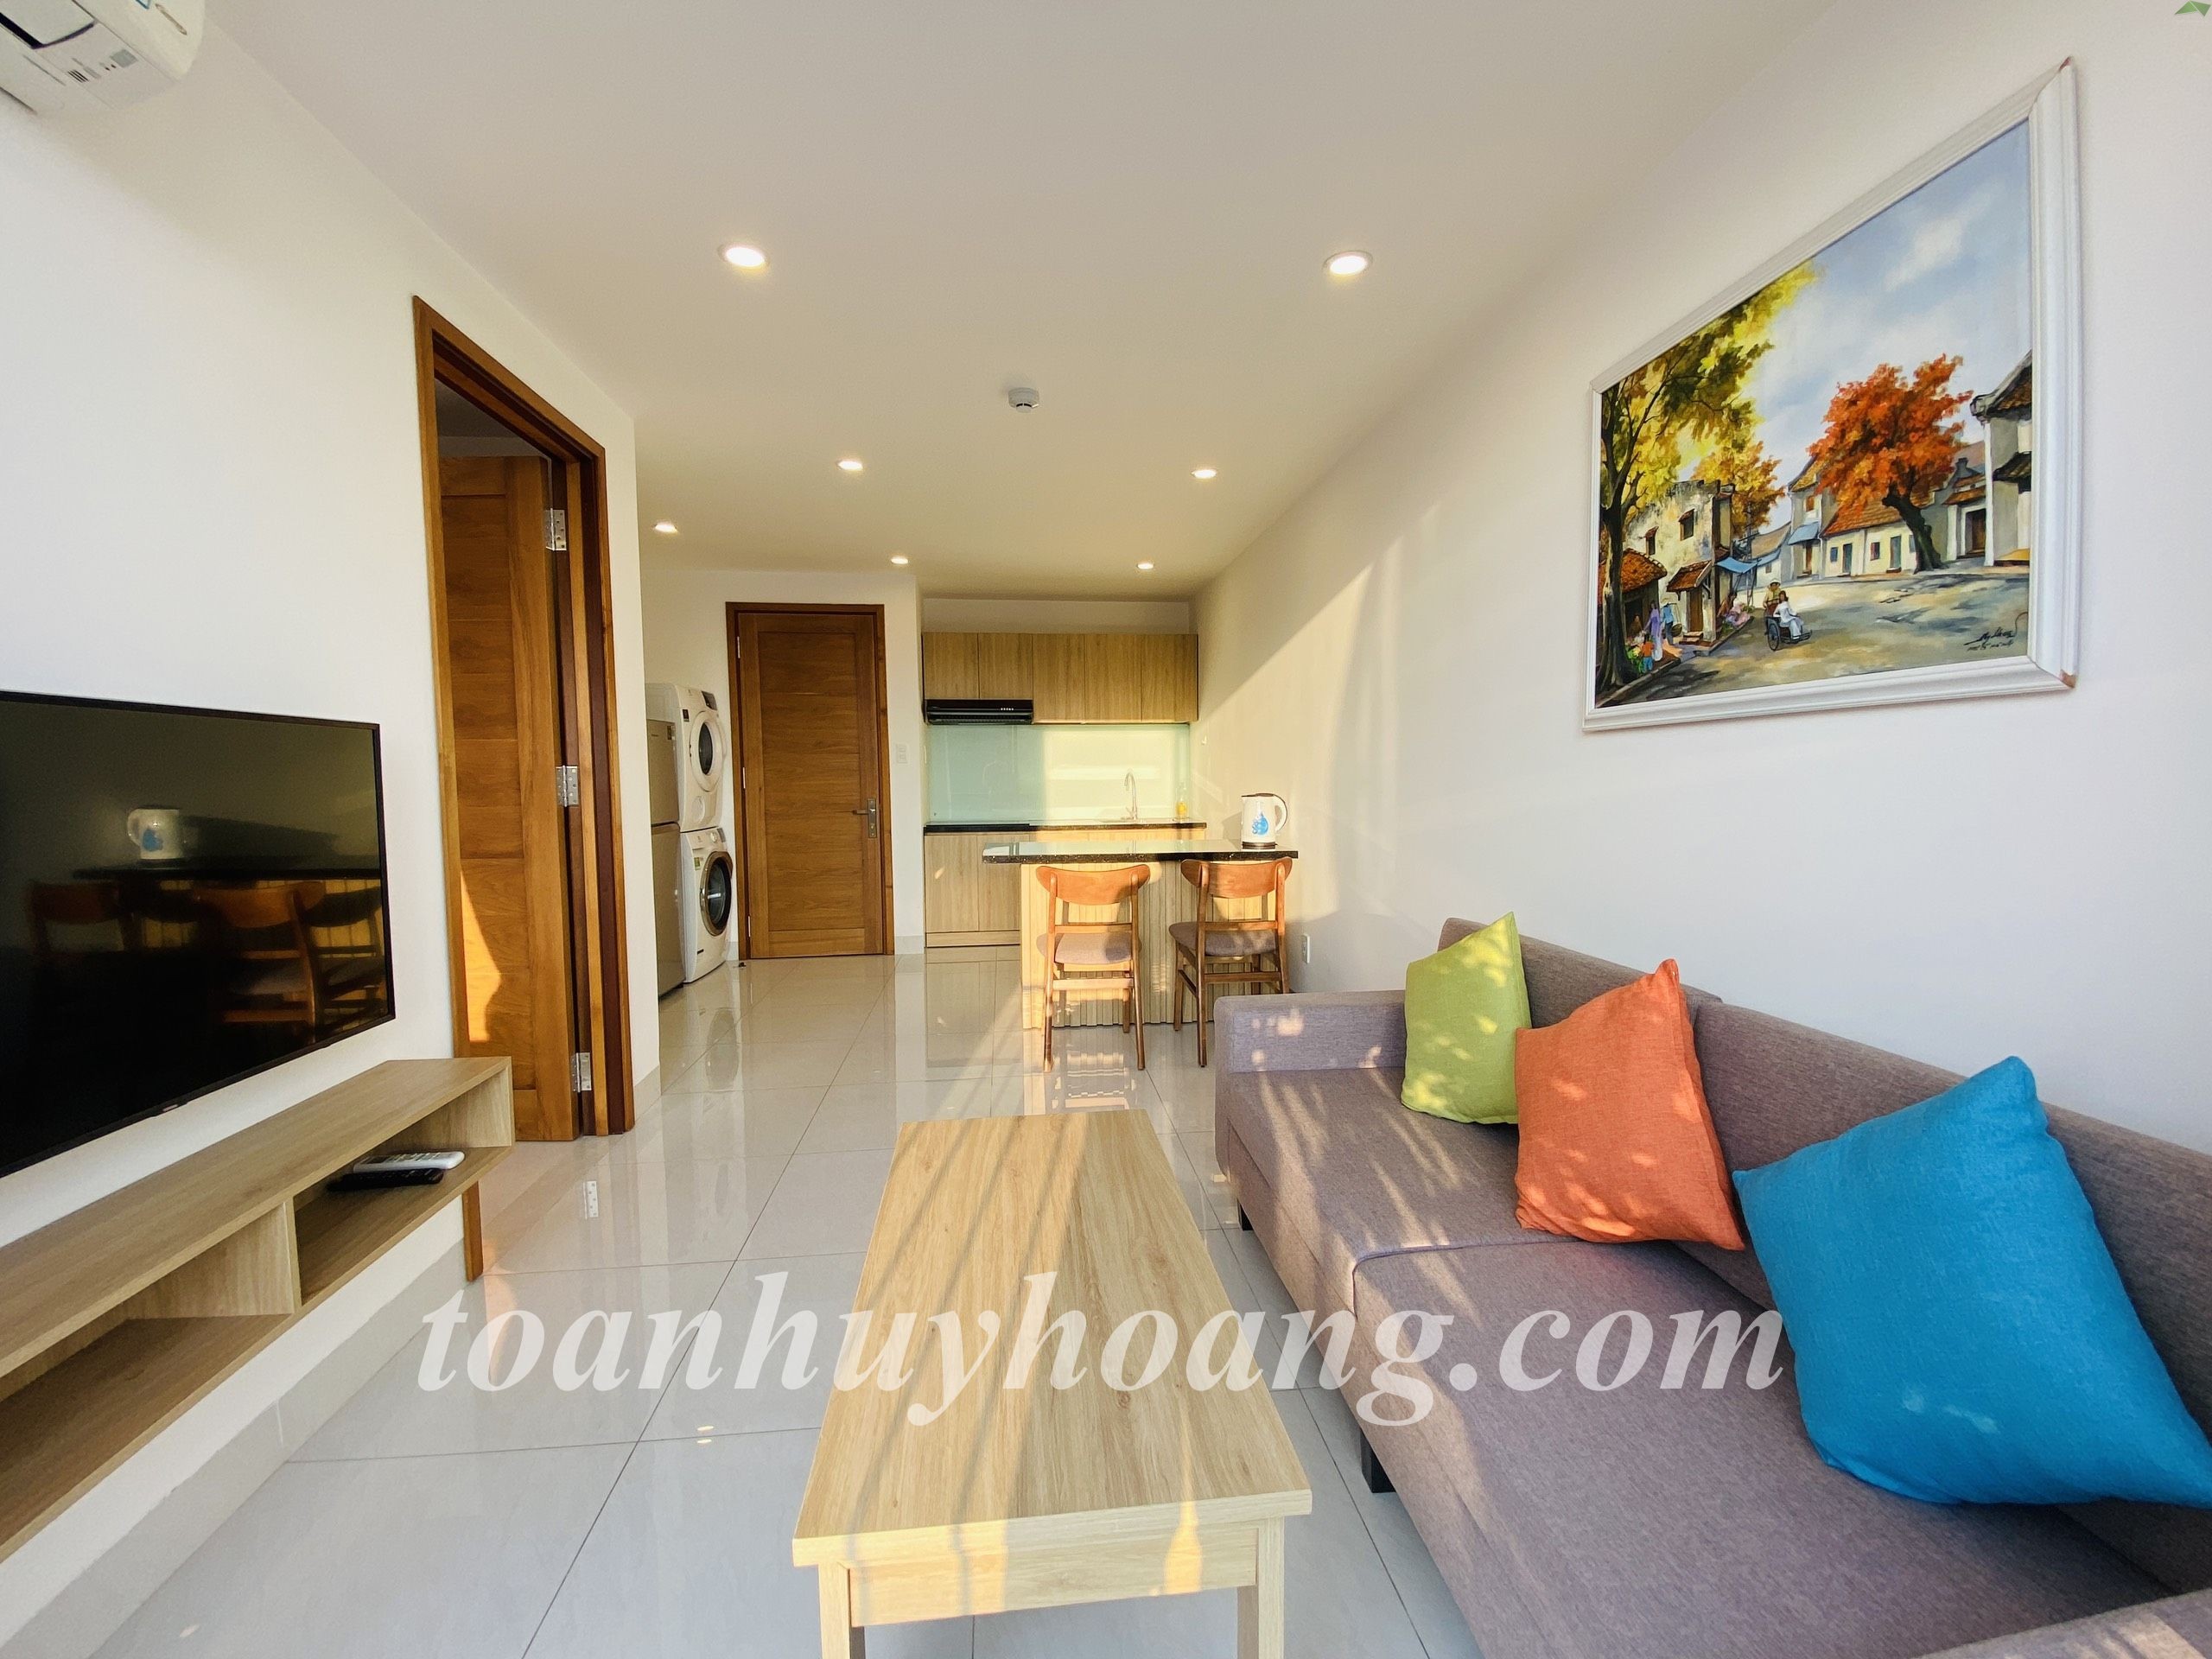 Căn Hộ 1 Phòng Ngủ Tiện Nghi | Mỹ An | Bright One Bedroom Apartment near An Thuong